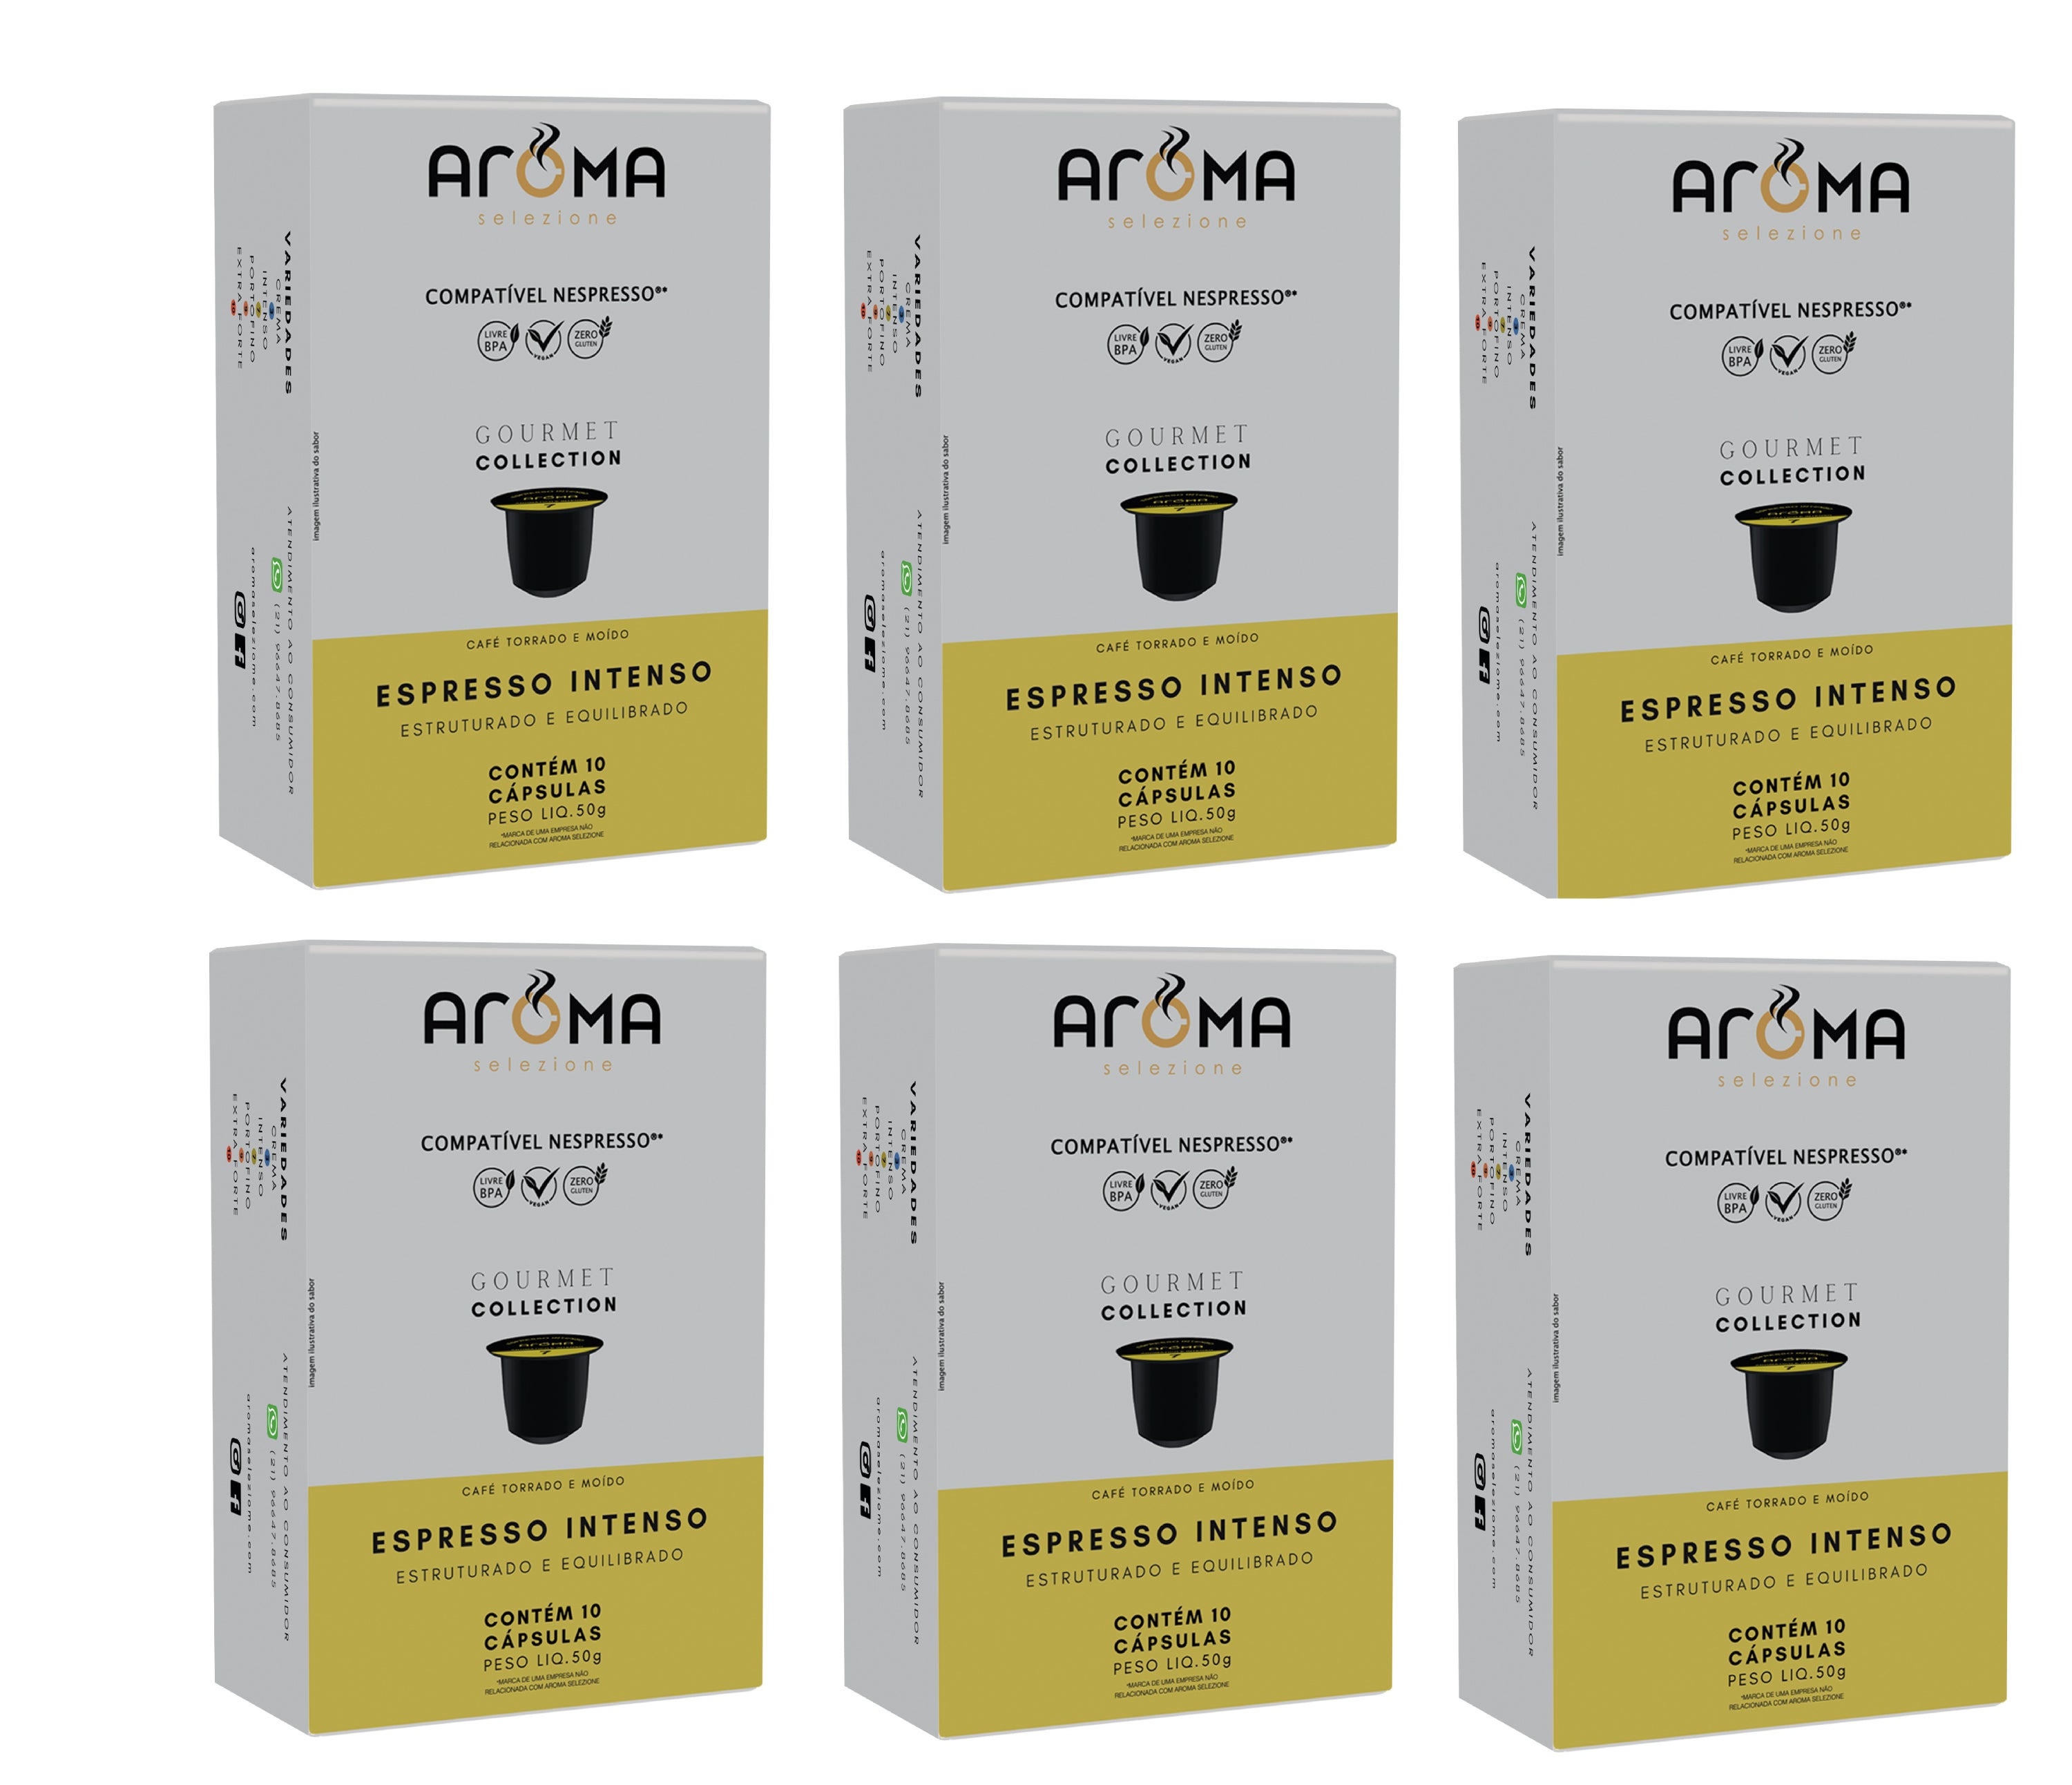 Kit Espresso Intenso 60 cápsulas para Nespresso ®*